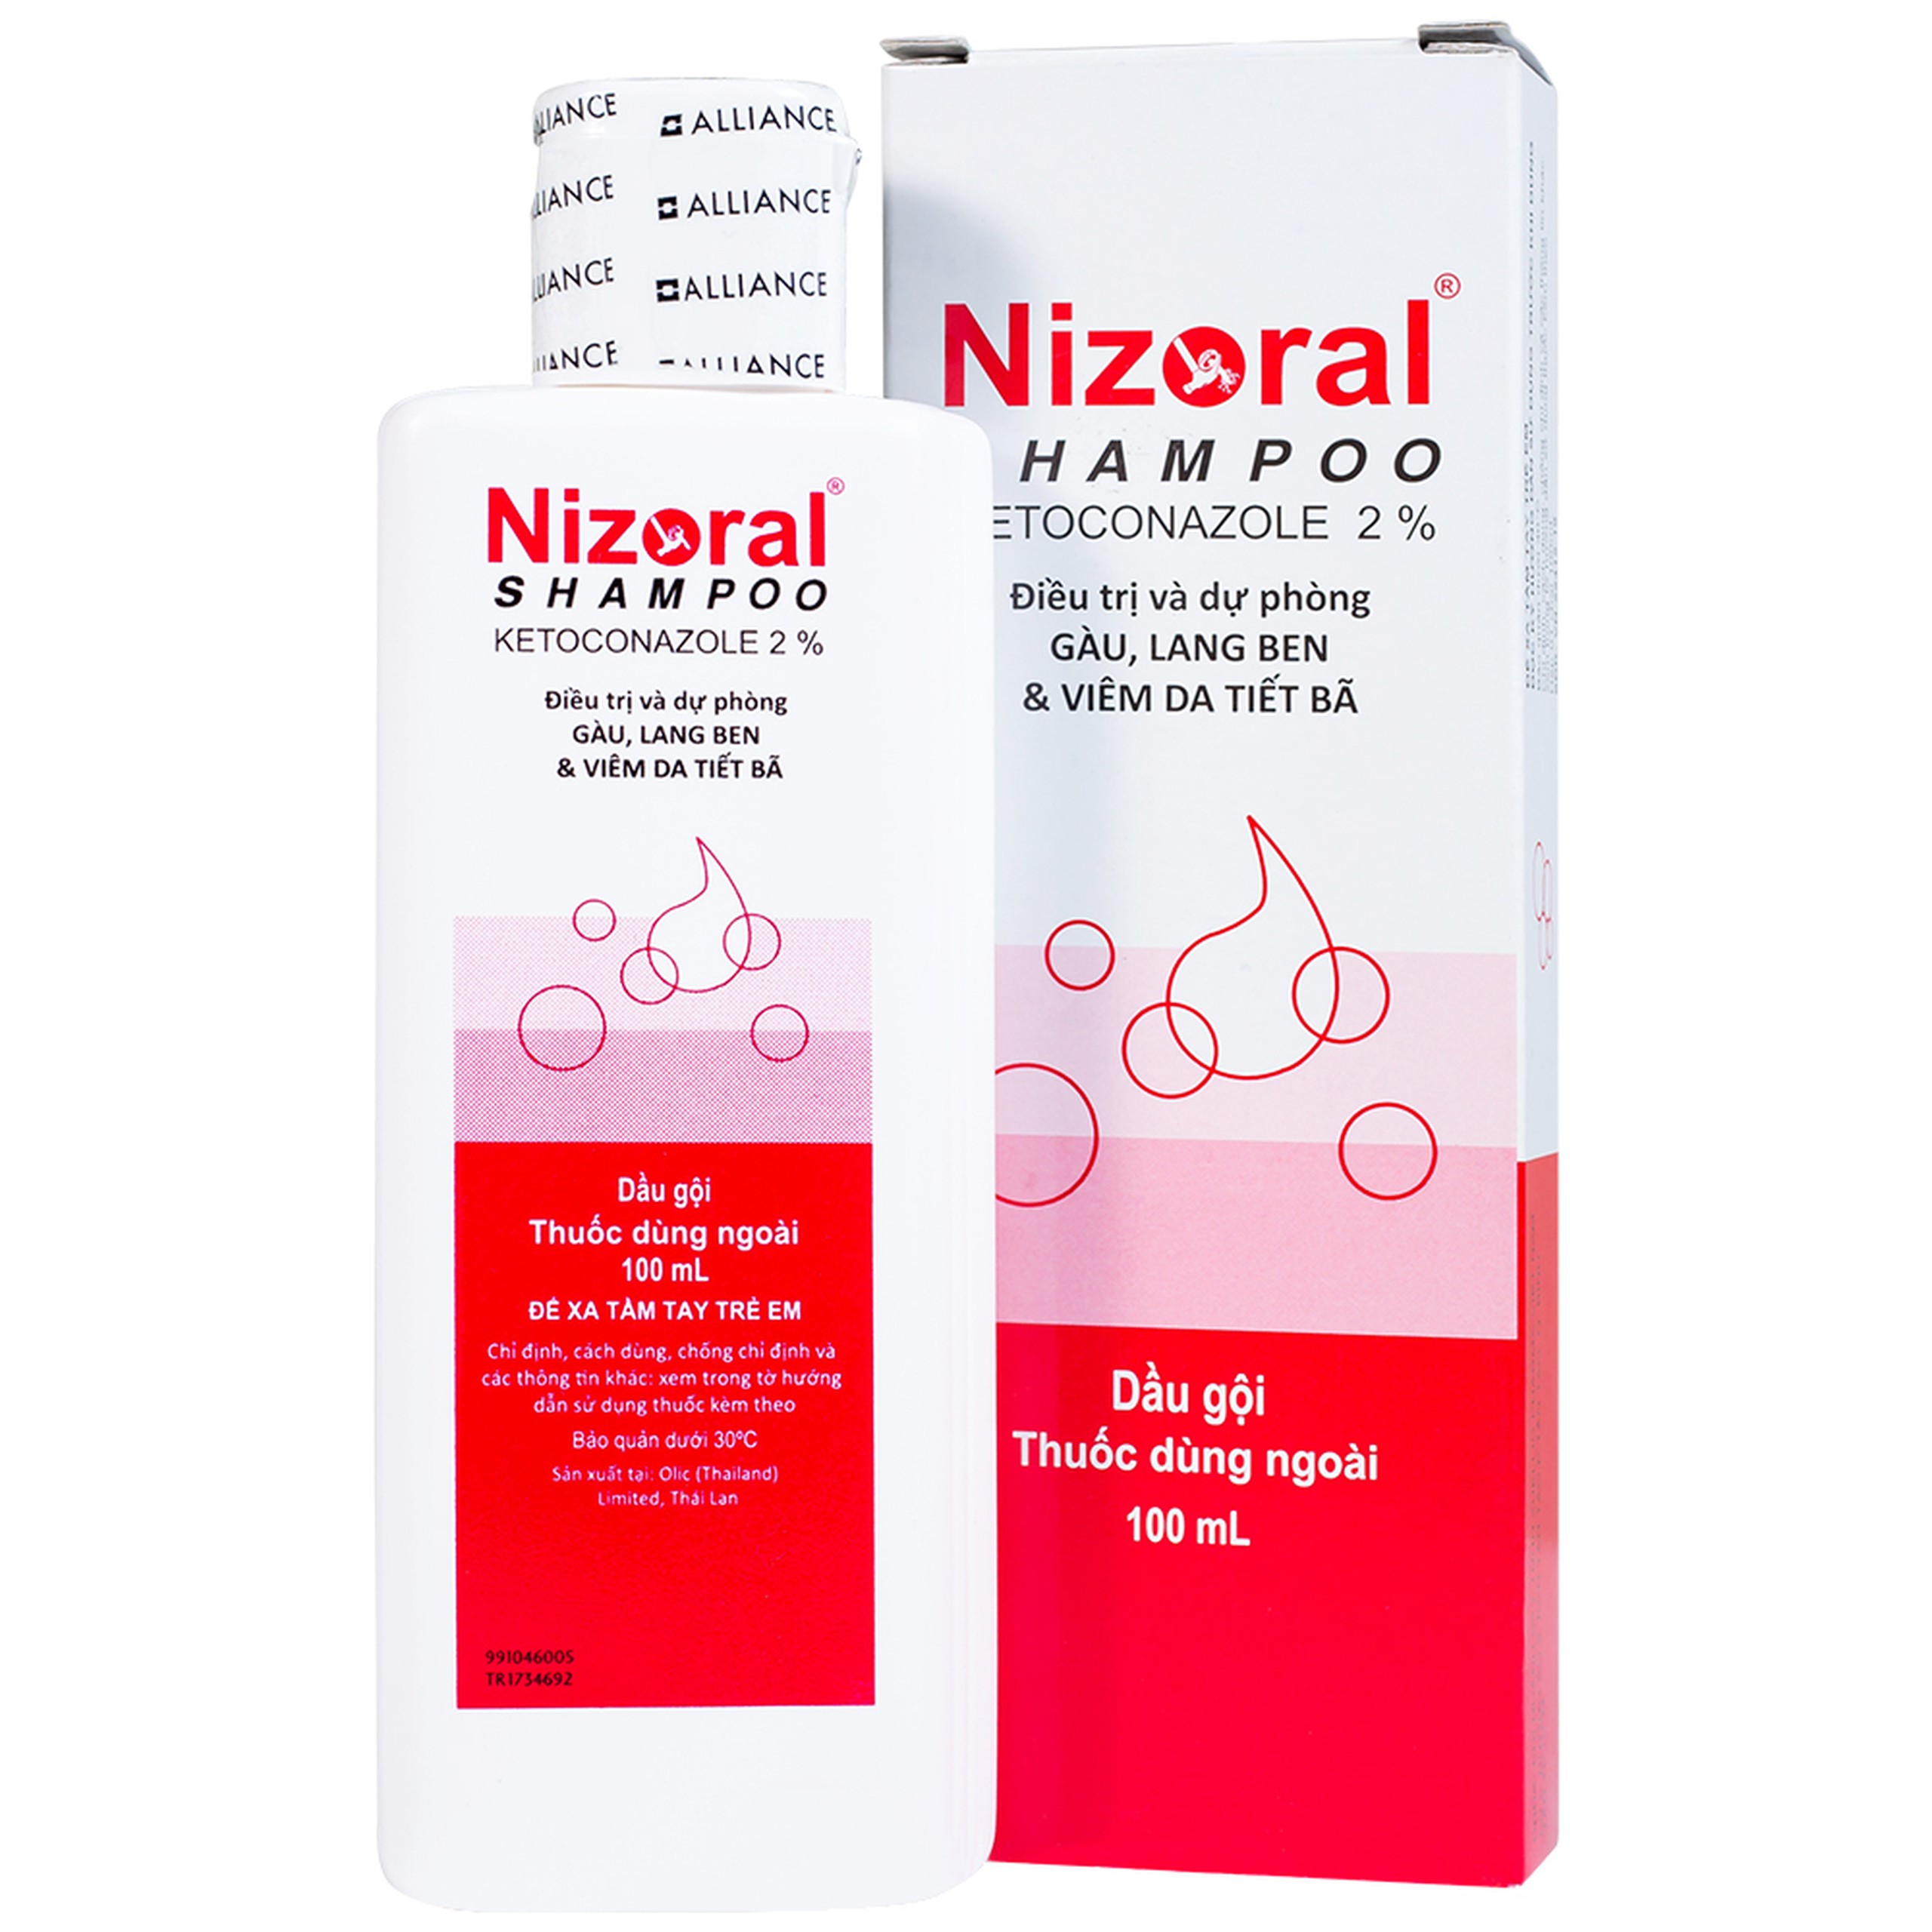 Dầu gội đầu Nizoral Shampoo Janssen điều trị và dự phòng gàu, lang ben và viêm da tiết bã (100ml)